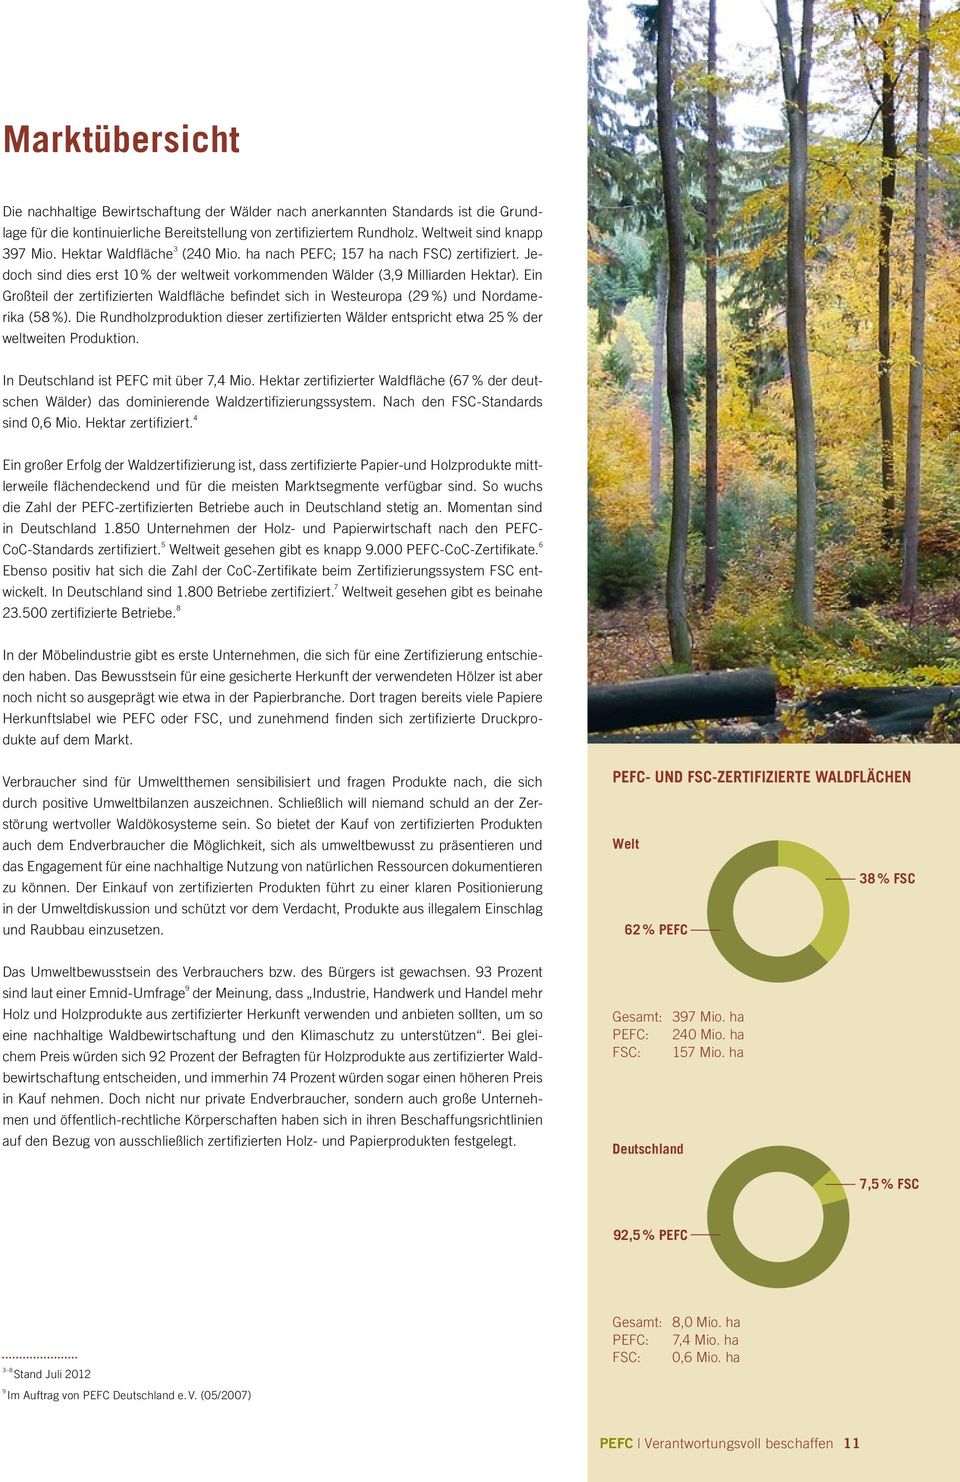 Ein Großteil der zertifizierten Waldfläche befindet sich in Westeuropa (29 %) und Nordamerika (58 %).